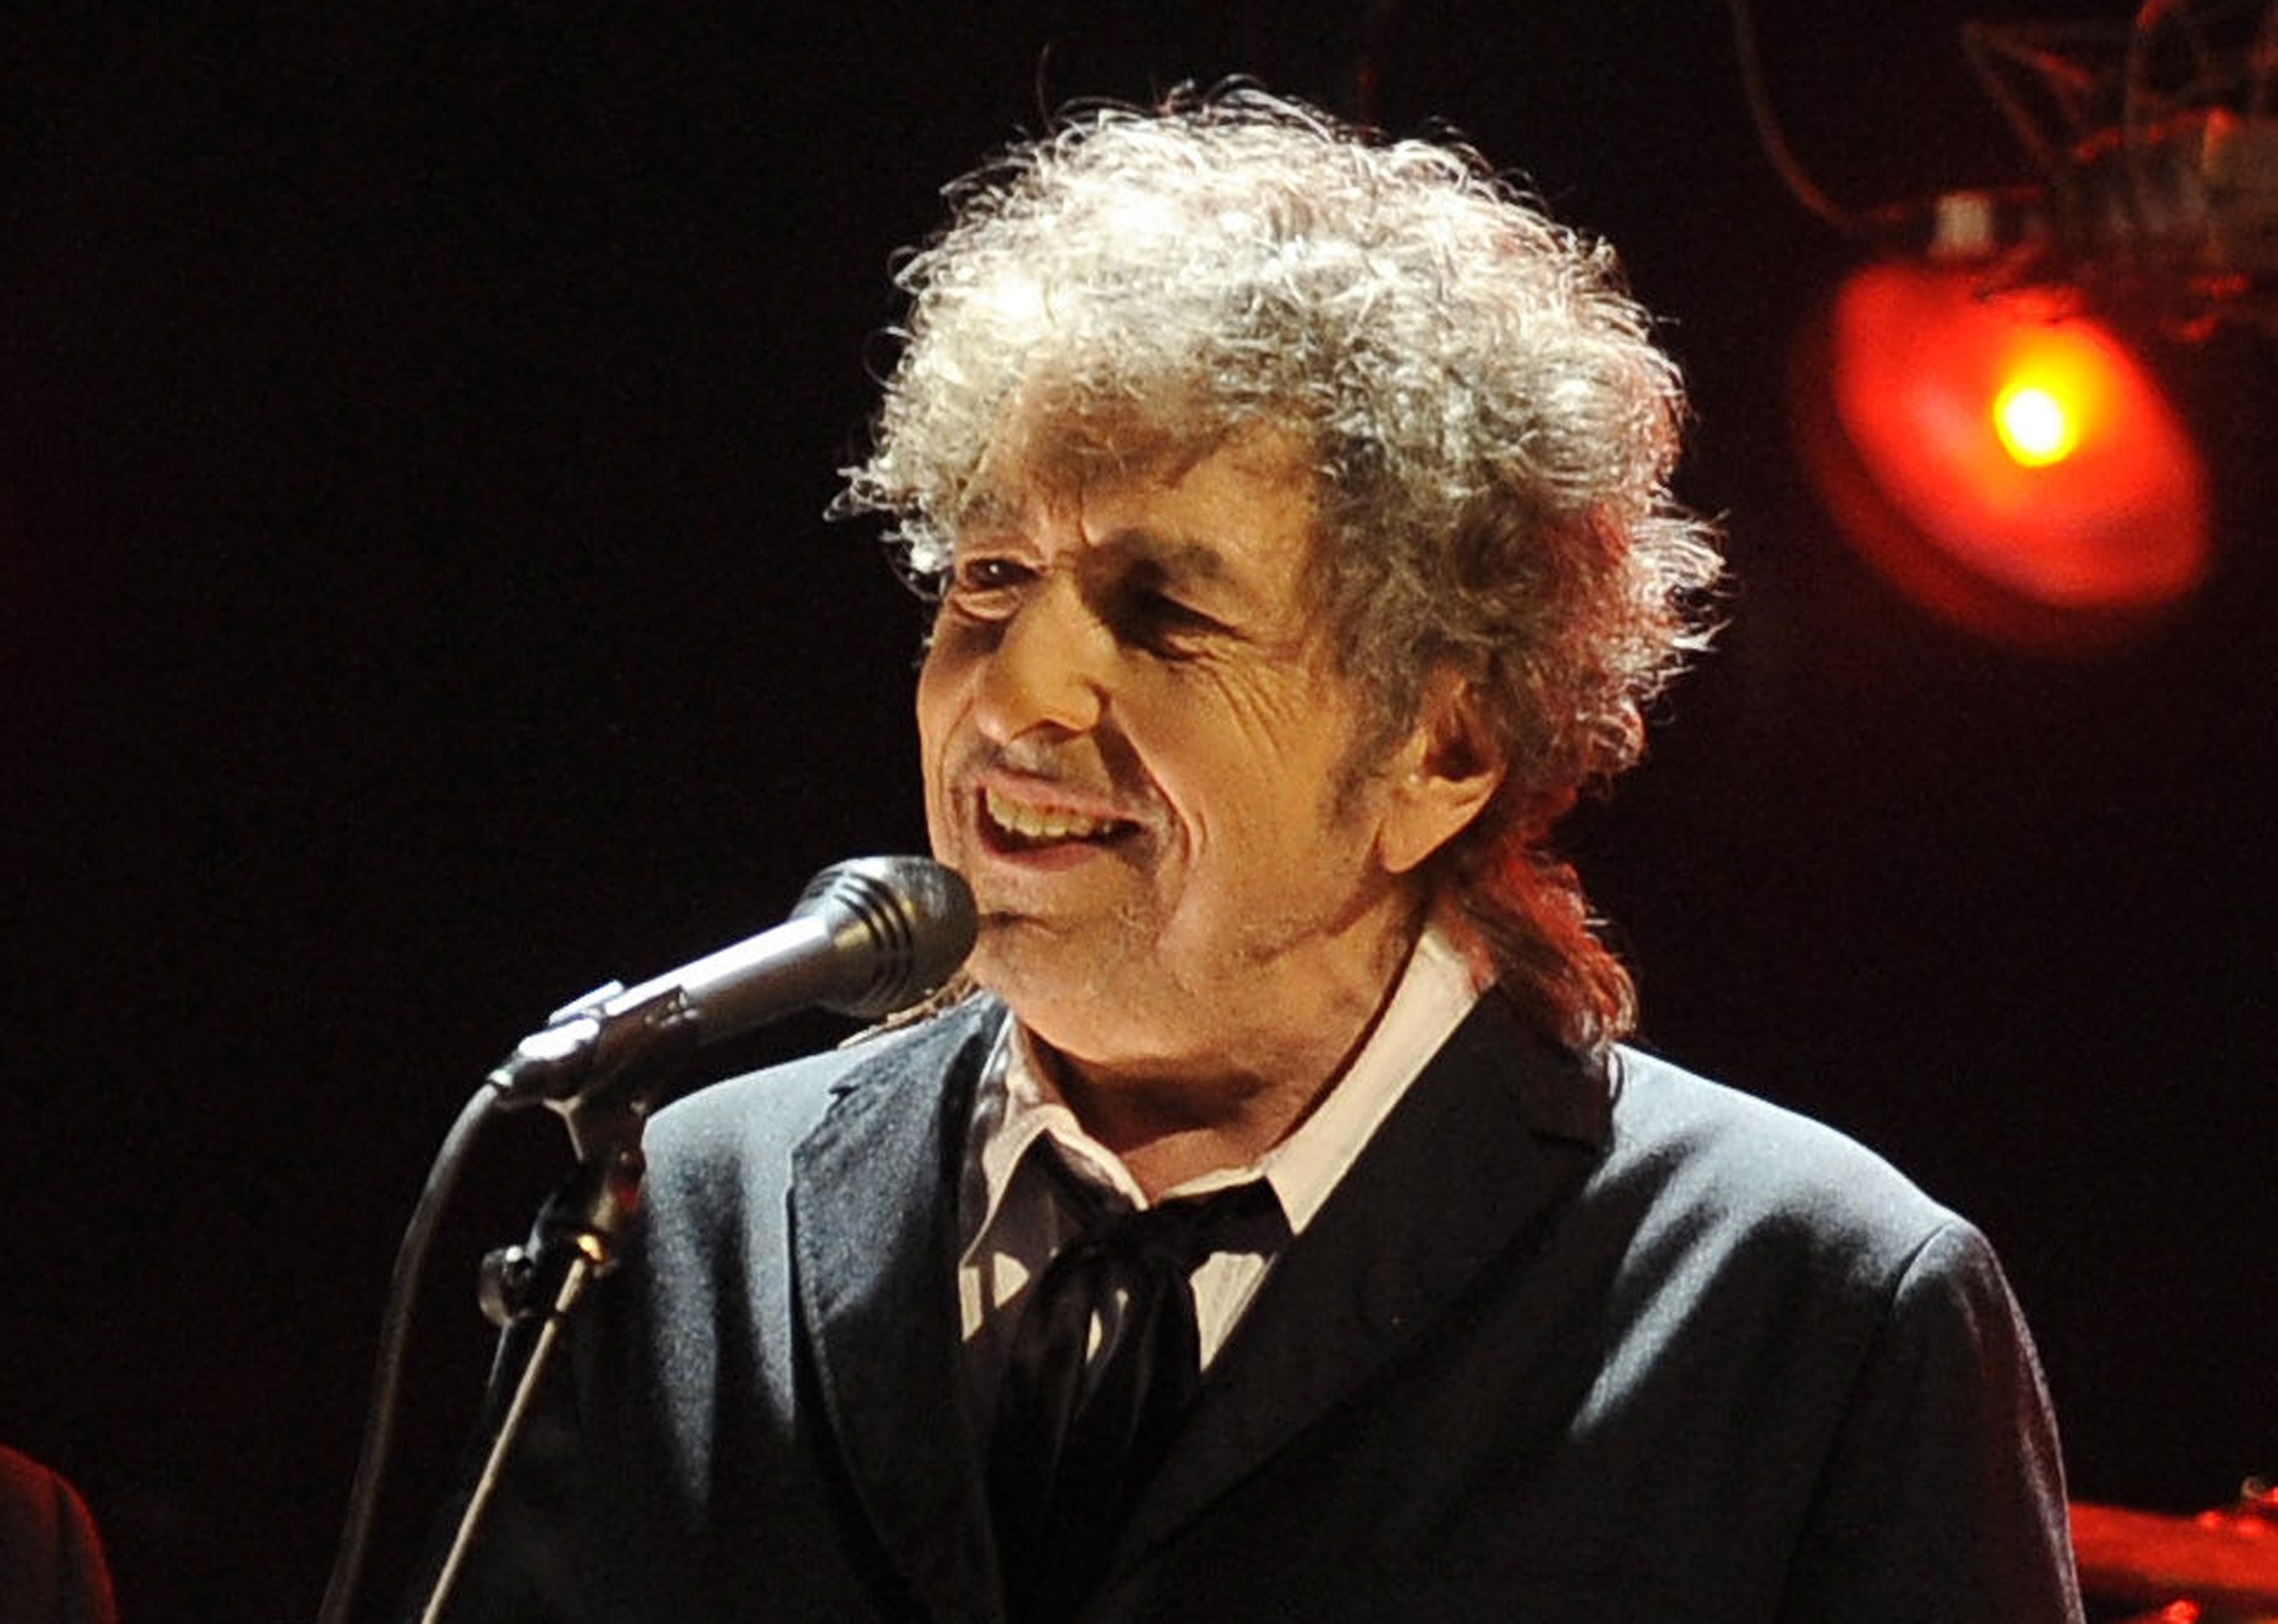 Bob Dylan Wallpaper - Bob Dylan Today 2019 - HD Wallpaper 